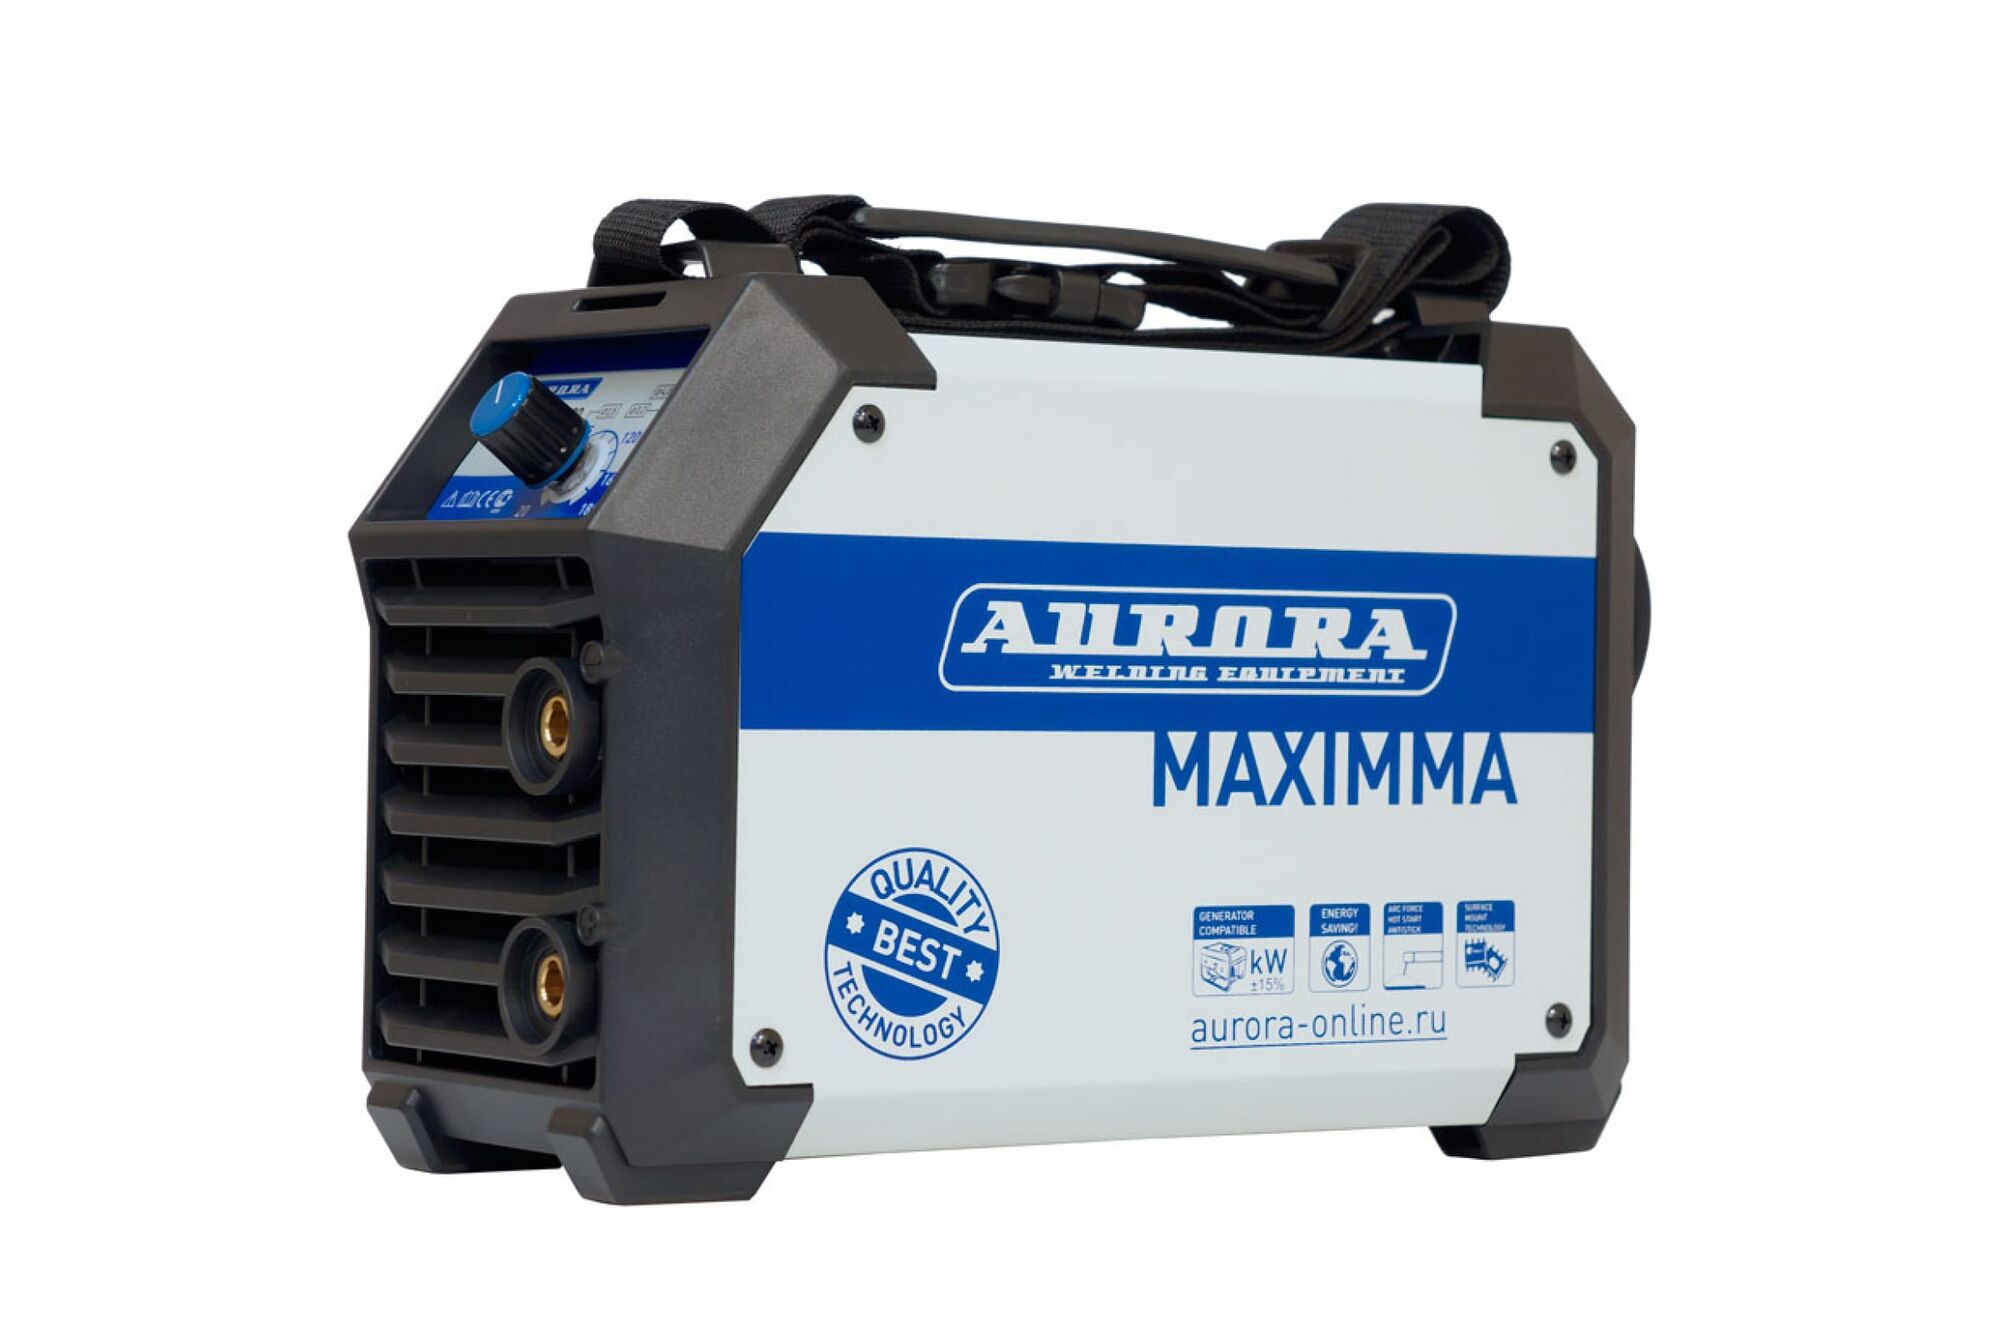 Сварочный инвертор Aurora MAXIMMA 1800 IGBT 18396